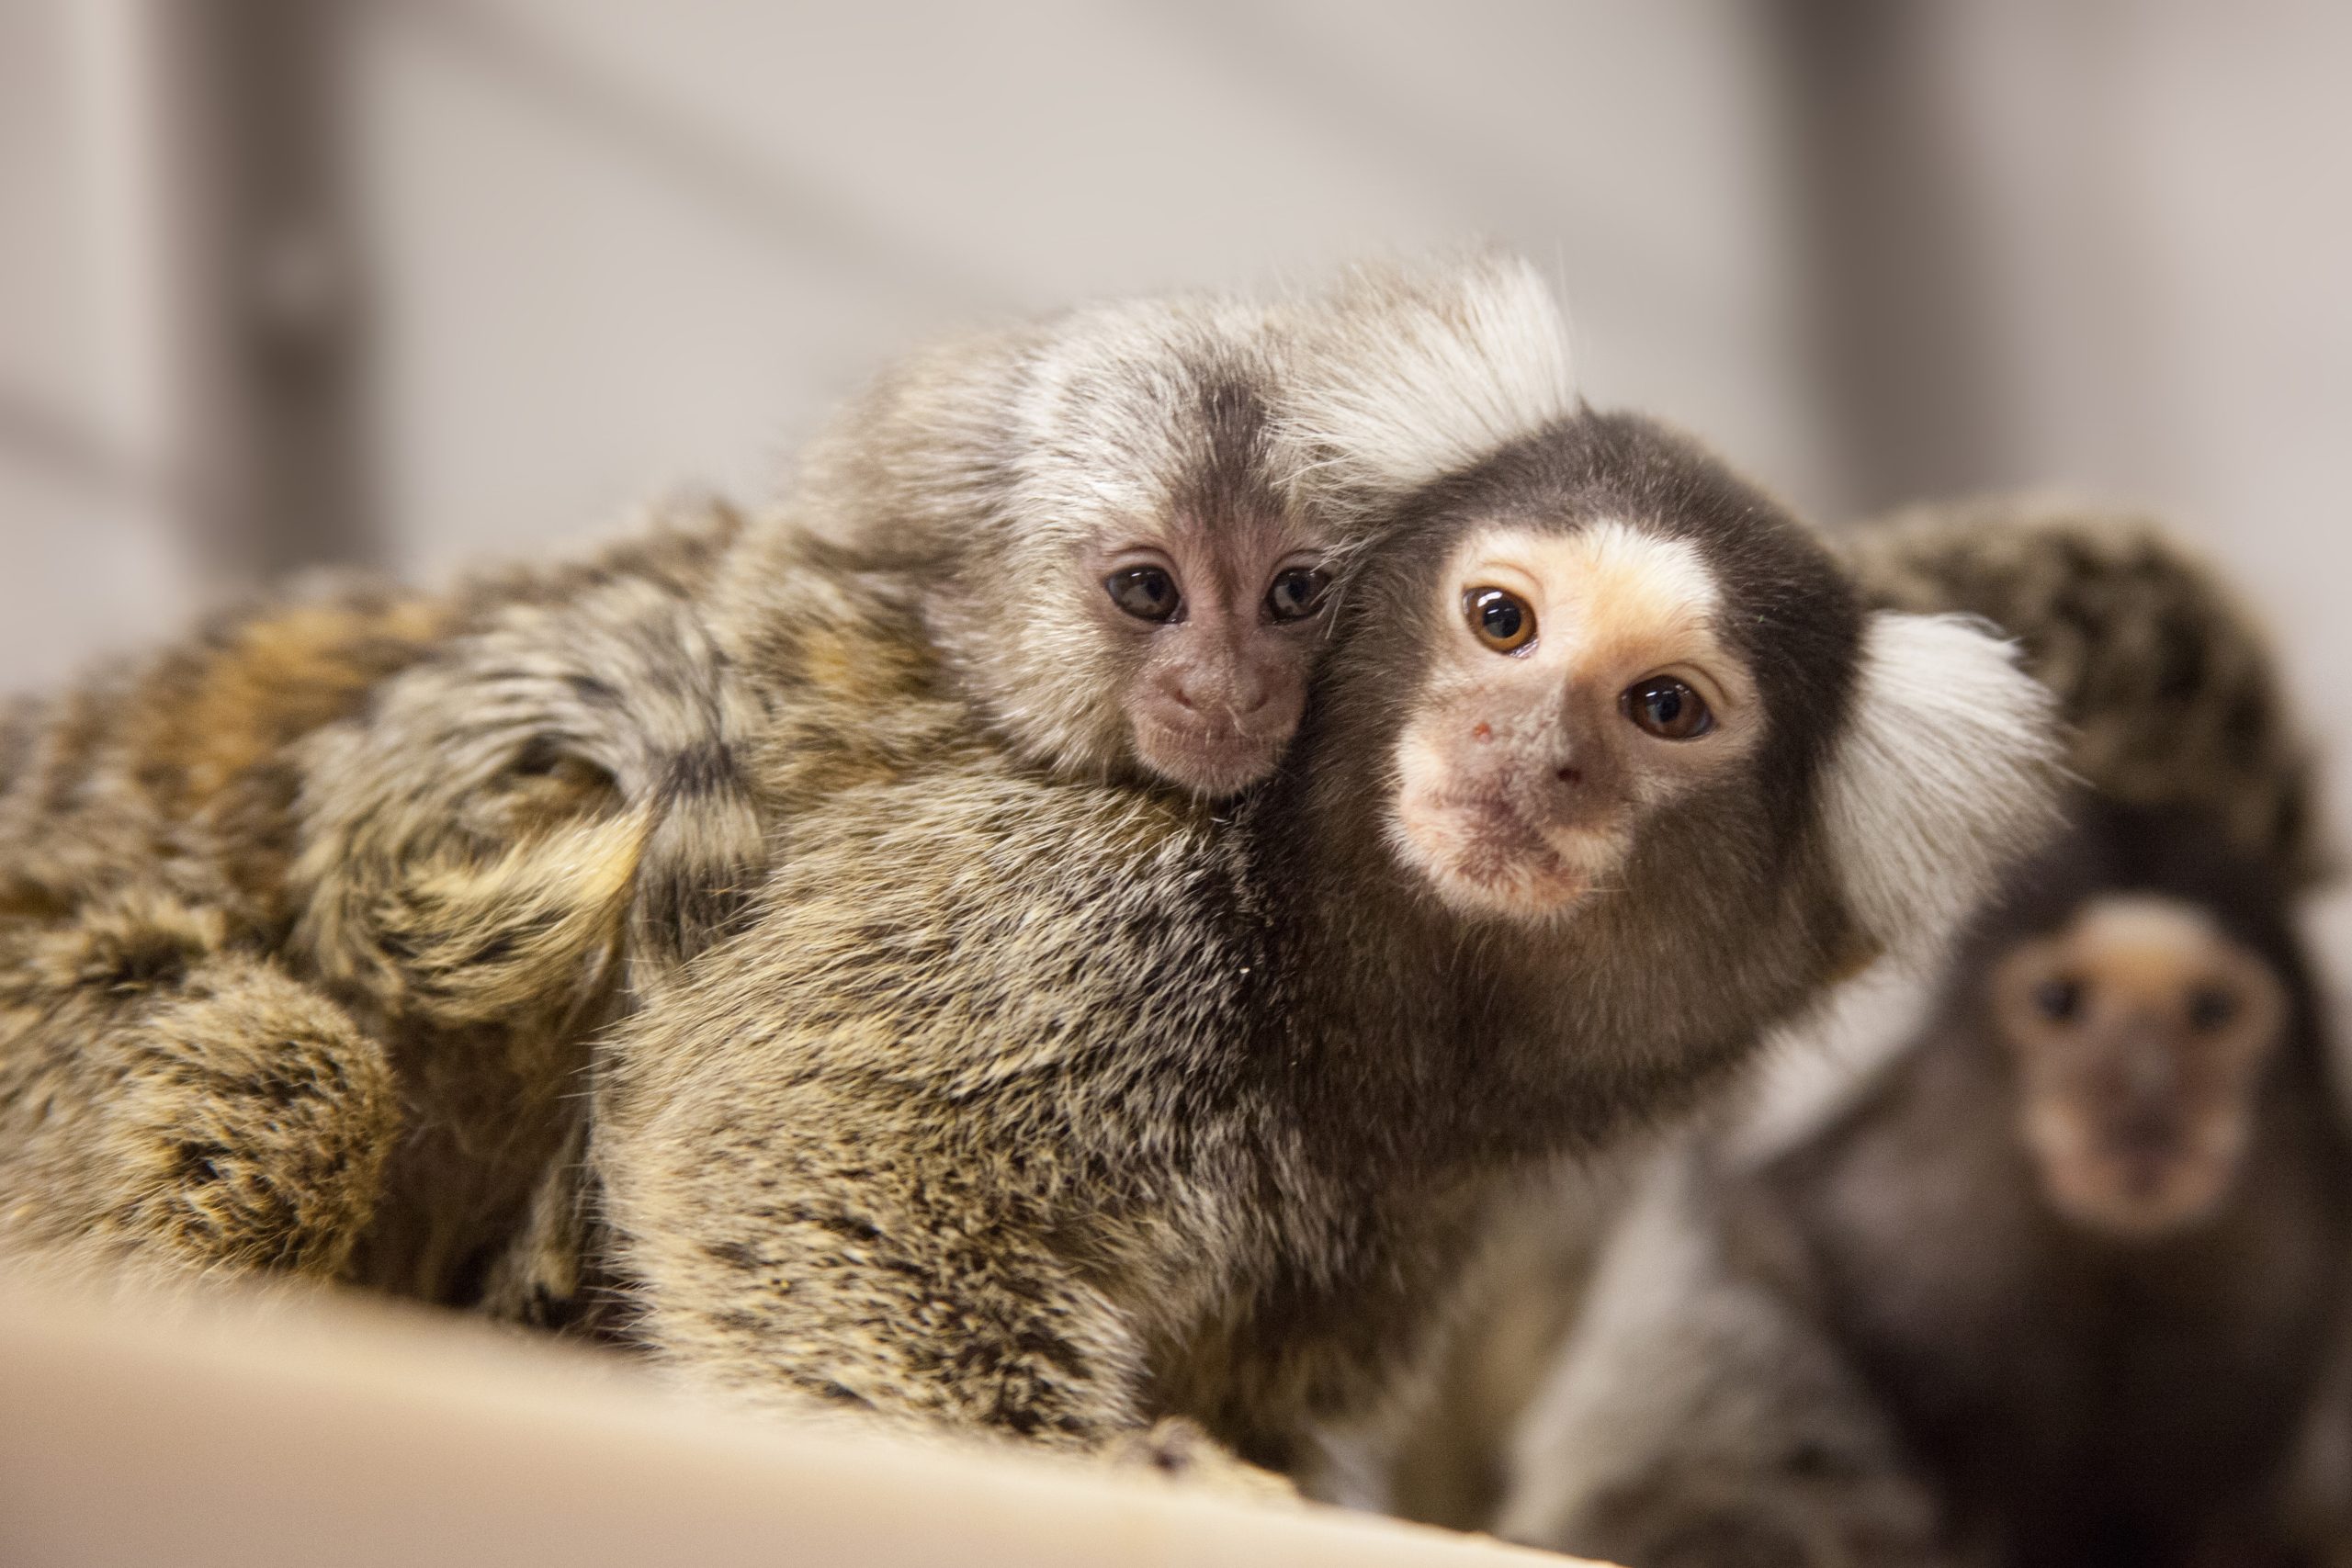 Image of marmosets huddled together